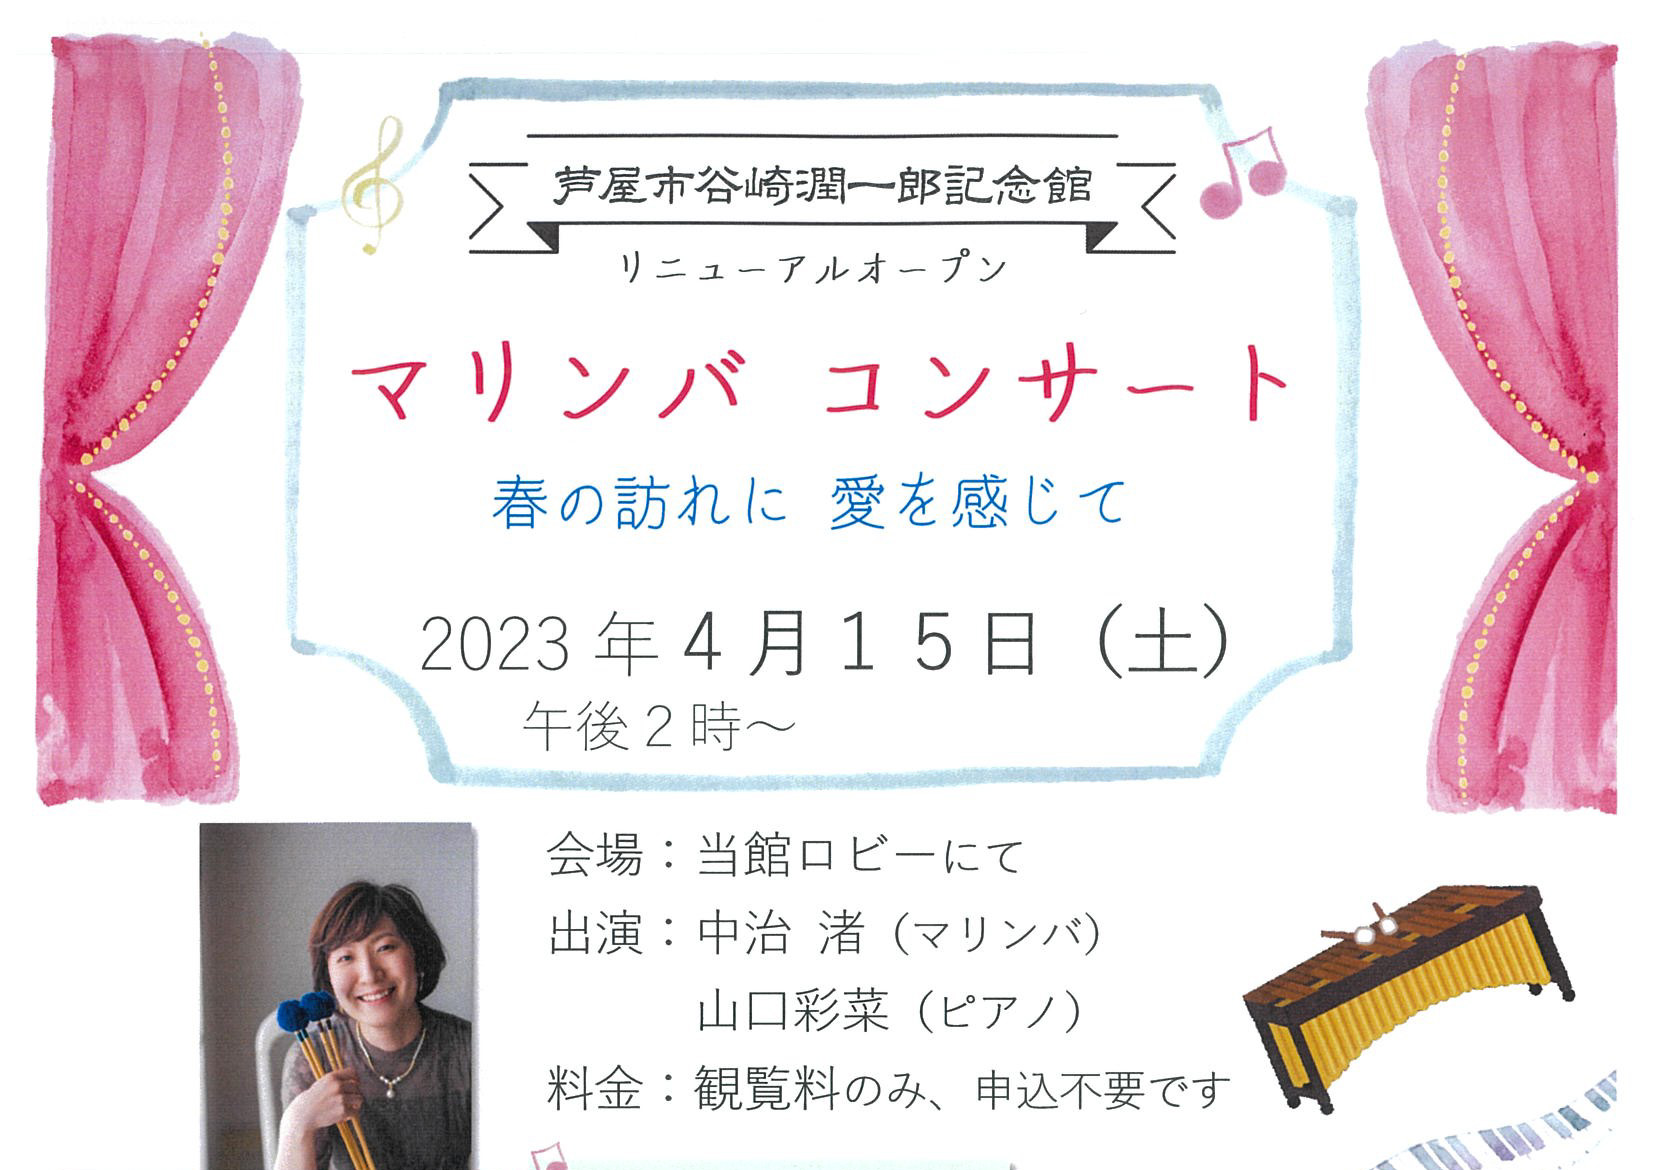 2023年4月15日 芦屋谷崎潤一郎記念館 マリンバコンサート